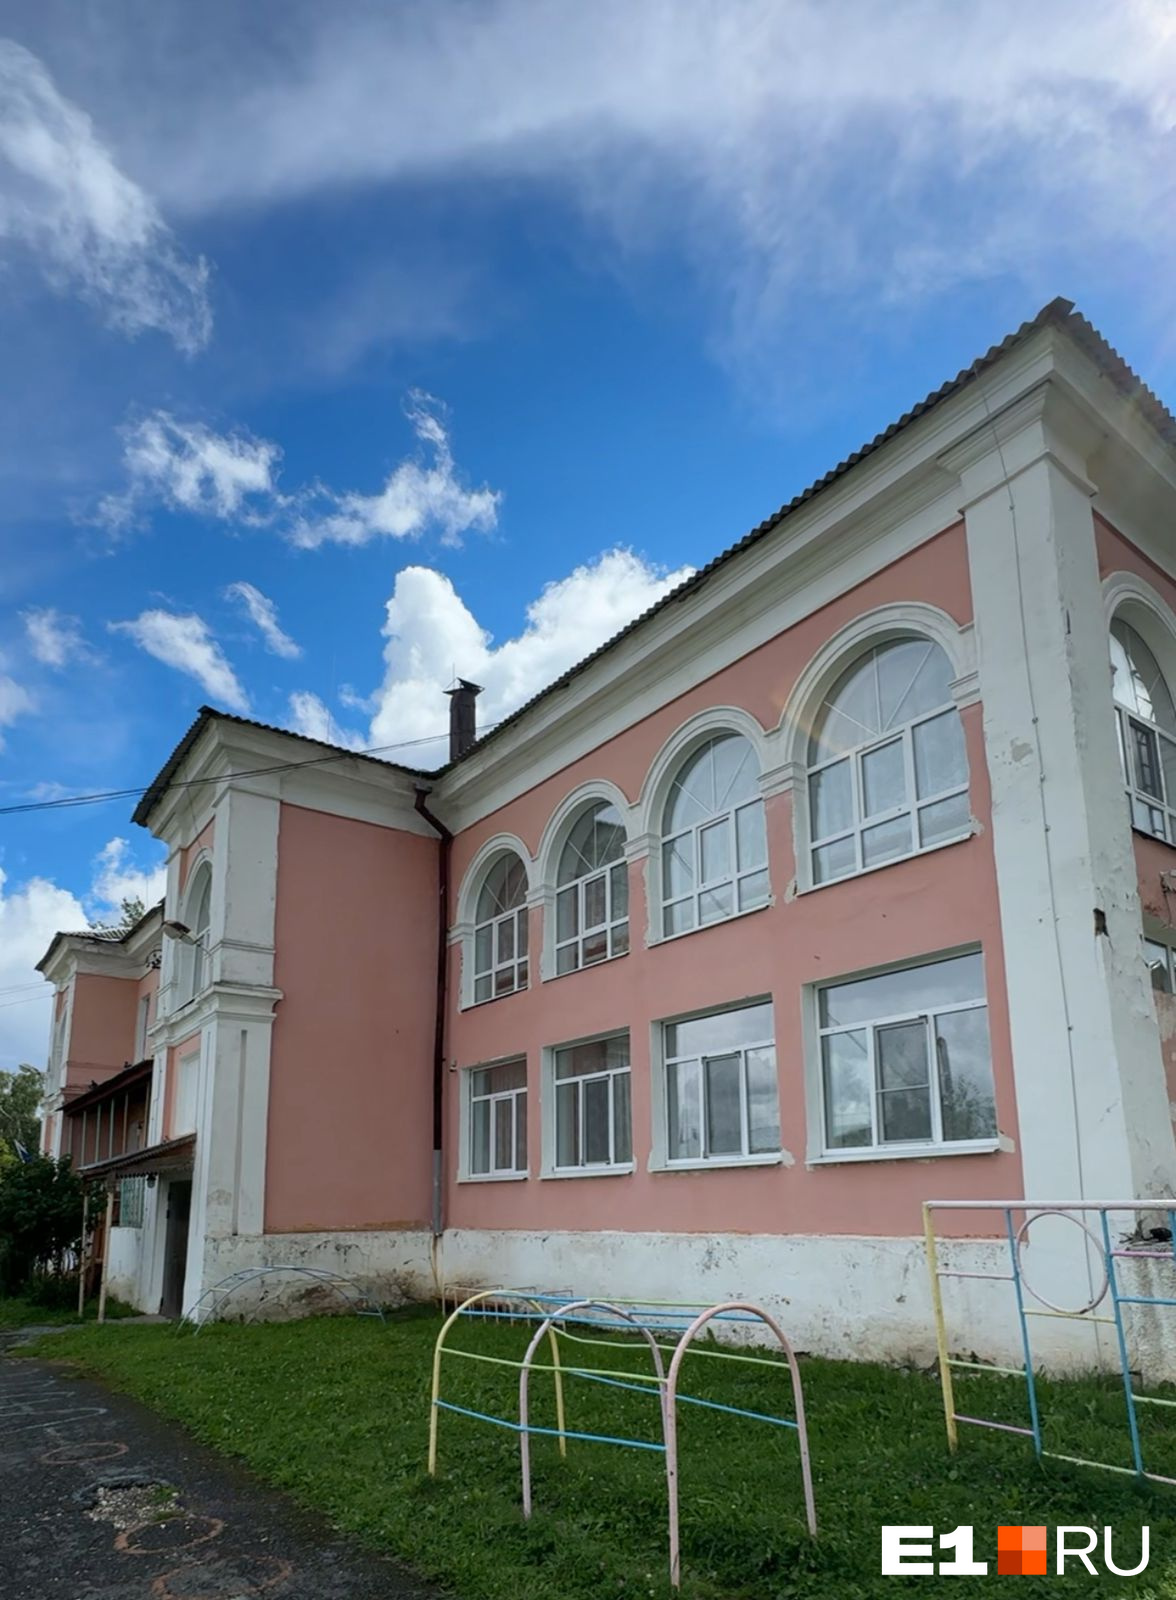 На Урале чиновники решили закрыть уникальный детский сад. Причина — «низкая рождаемость»